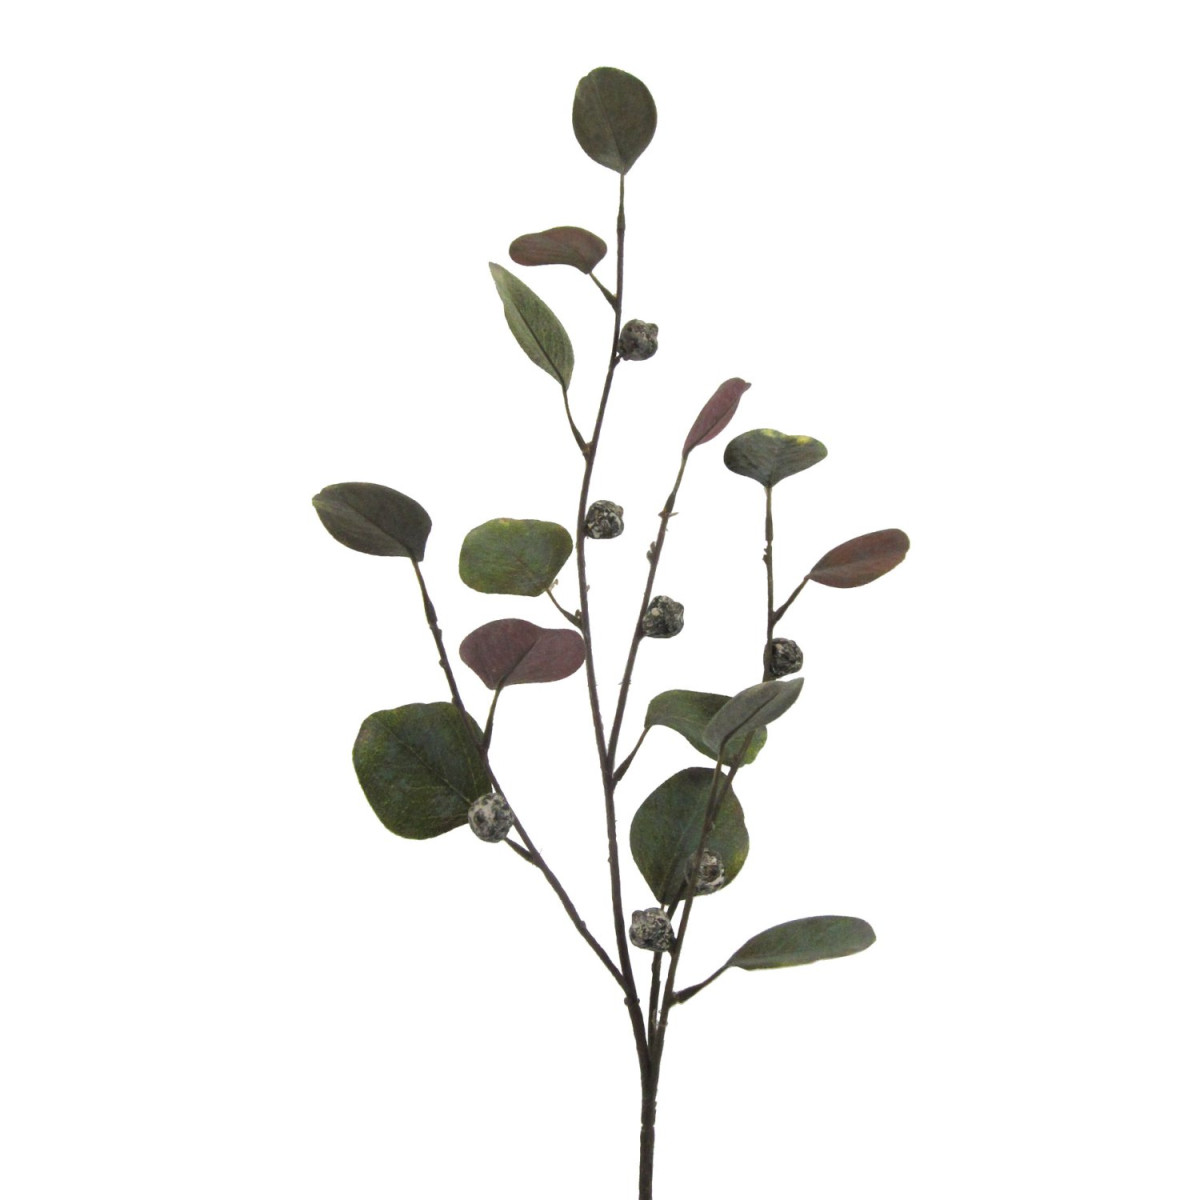 Eukalyptuszweig